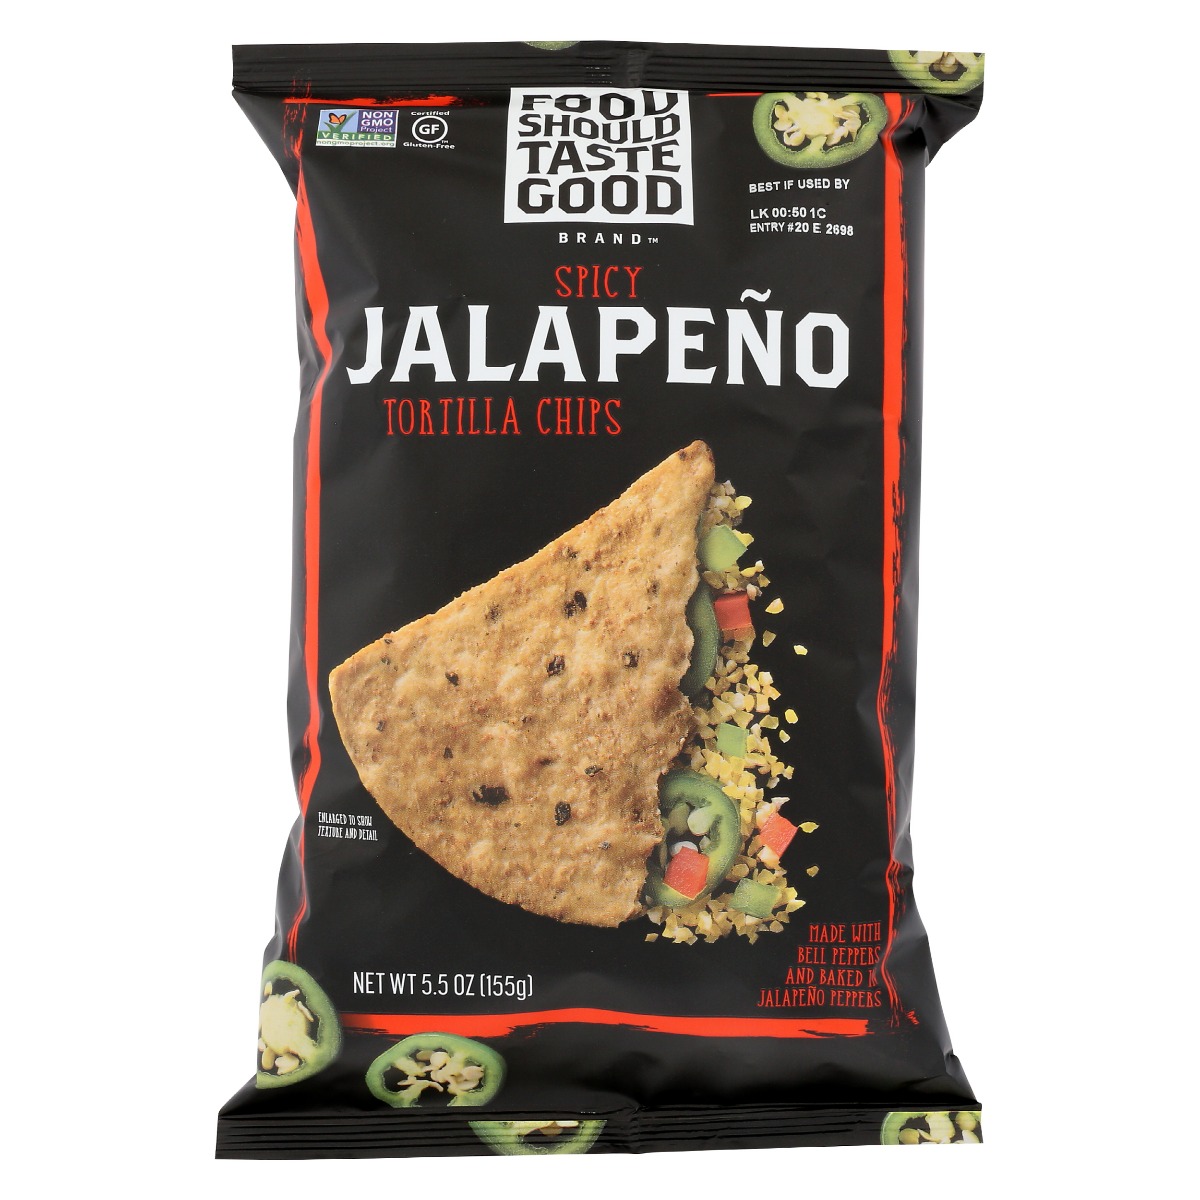 Food Should Taste Good Jalapeno Tortilla Chips - 00021908812618